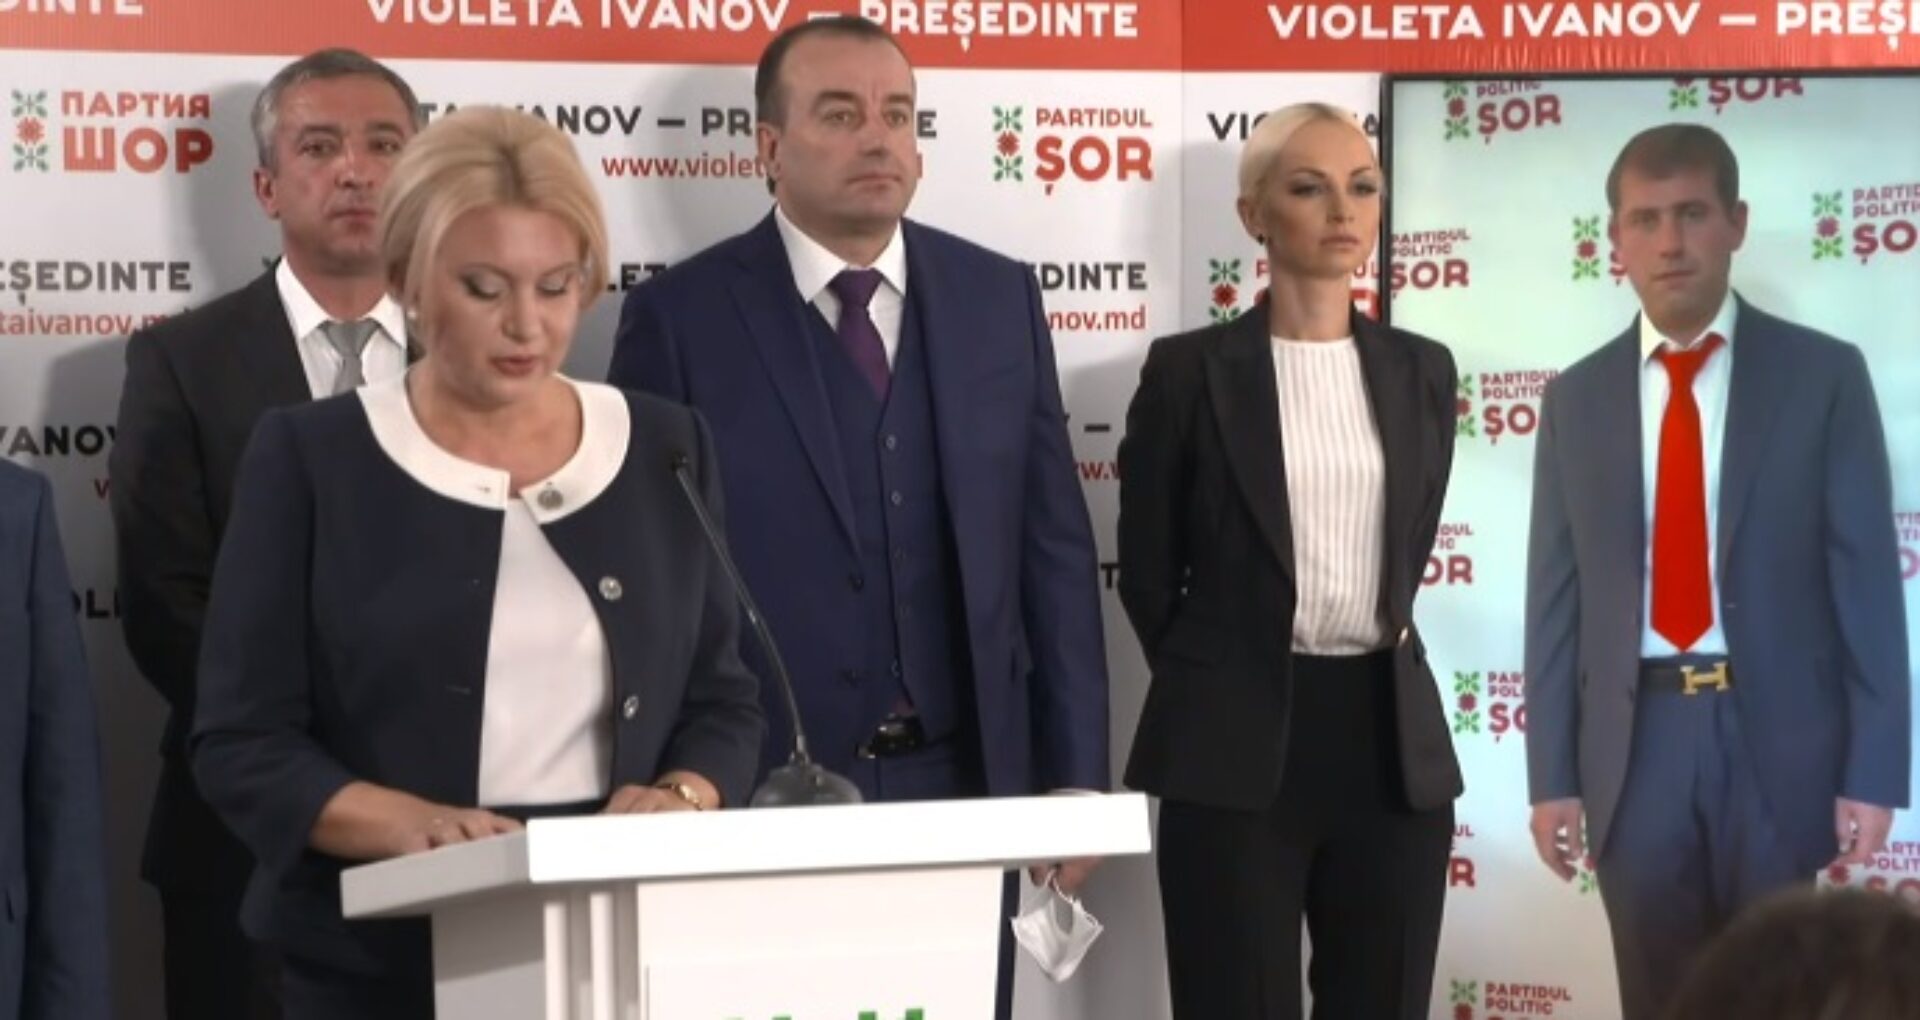 Video/ Scrutinul prezidențial. Violeta Ivanov, candidata Partidului Șor, s-a lansat oficial în campania electorală. Ilan Șor, prezent „virtual” la eveniment: „Noi putem transforma Moldova în Singapore”